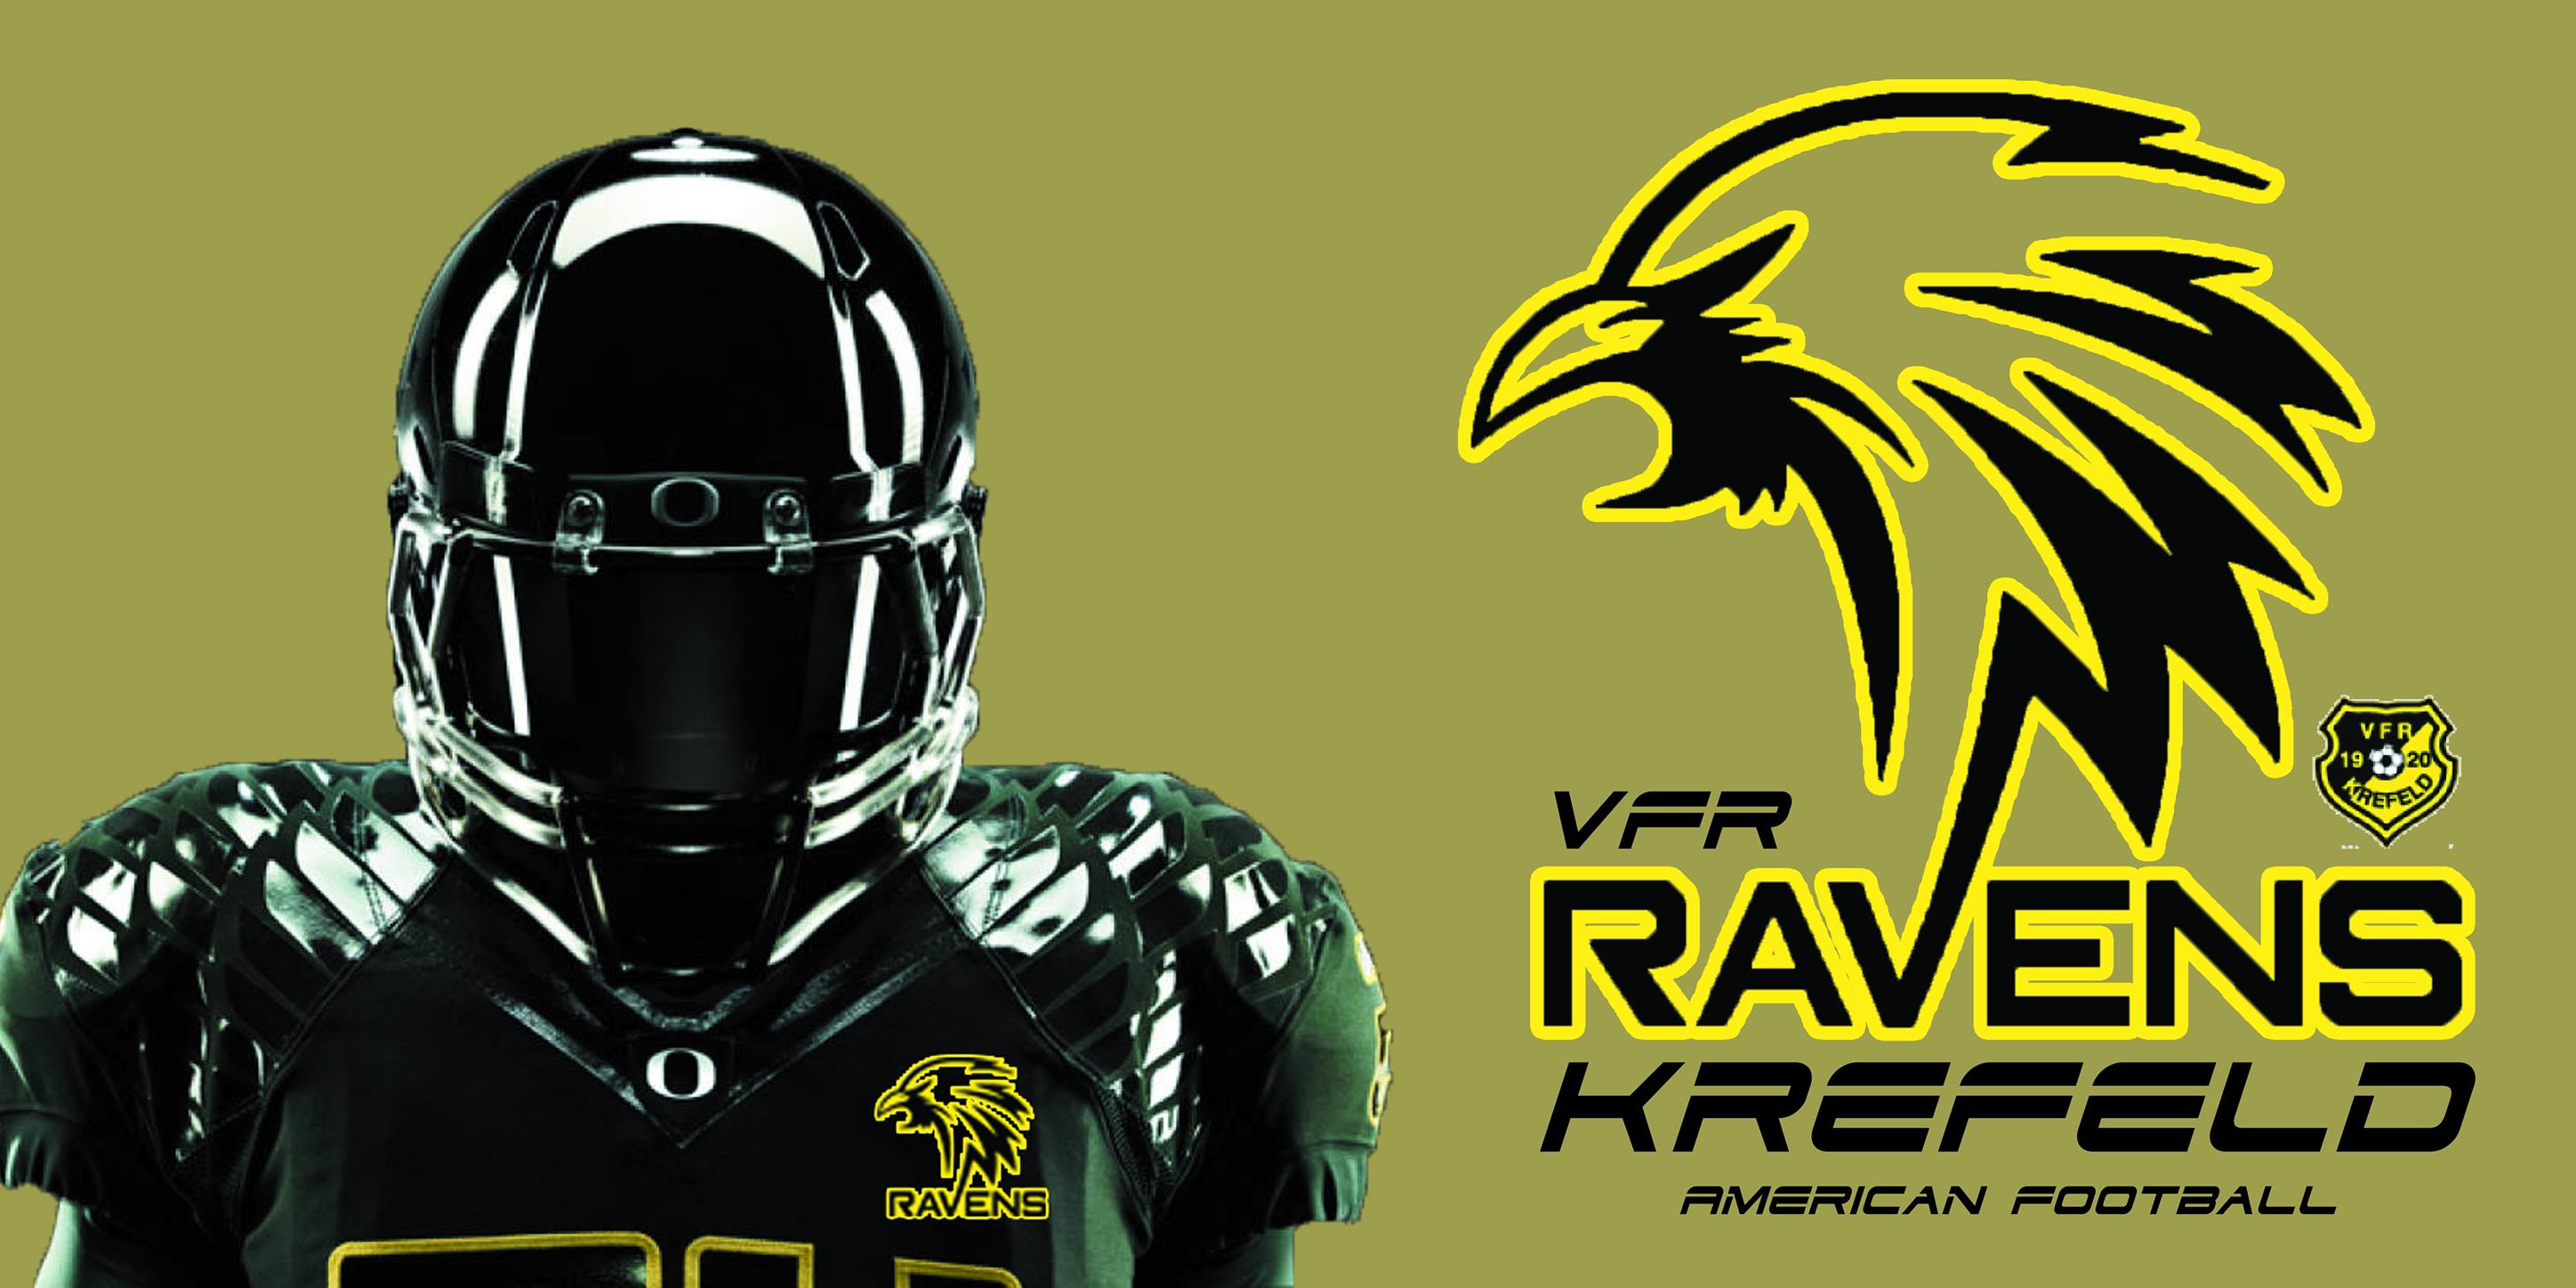 VFR Krefeld Ravens